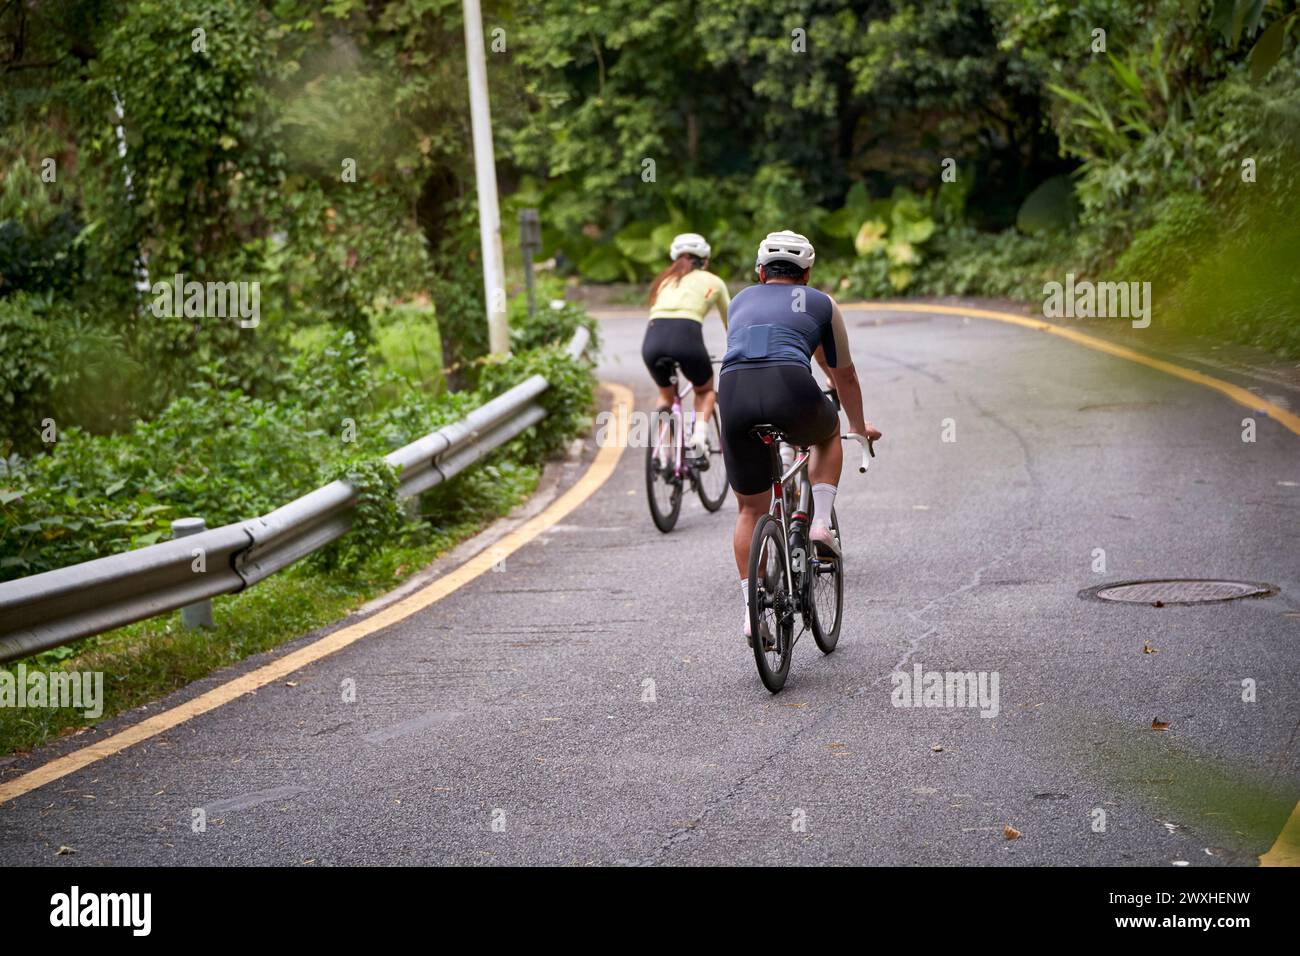 vue arrière de jeunes cyclistes de couple asiatique faisant du vélo sur la route rurale Banque D'Images